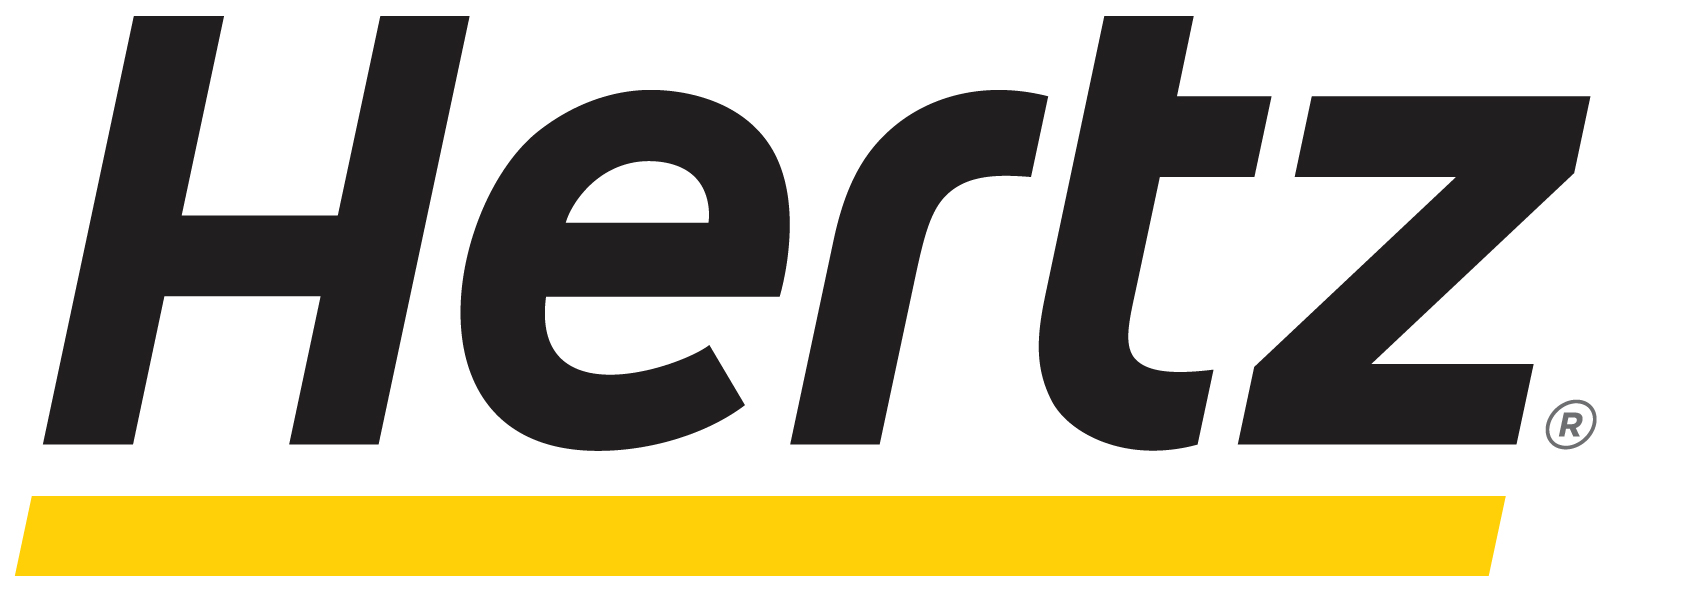 Hertz_logo.jpg